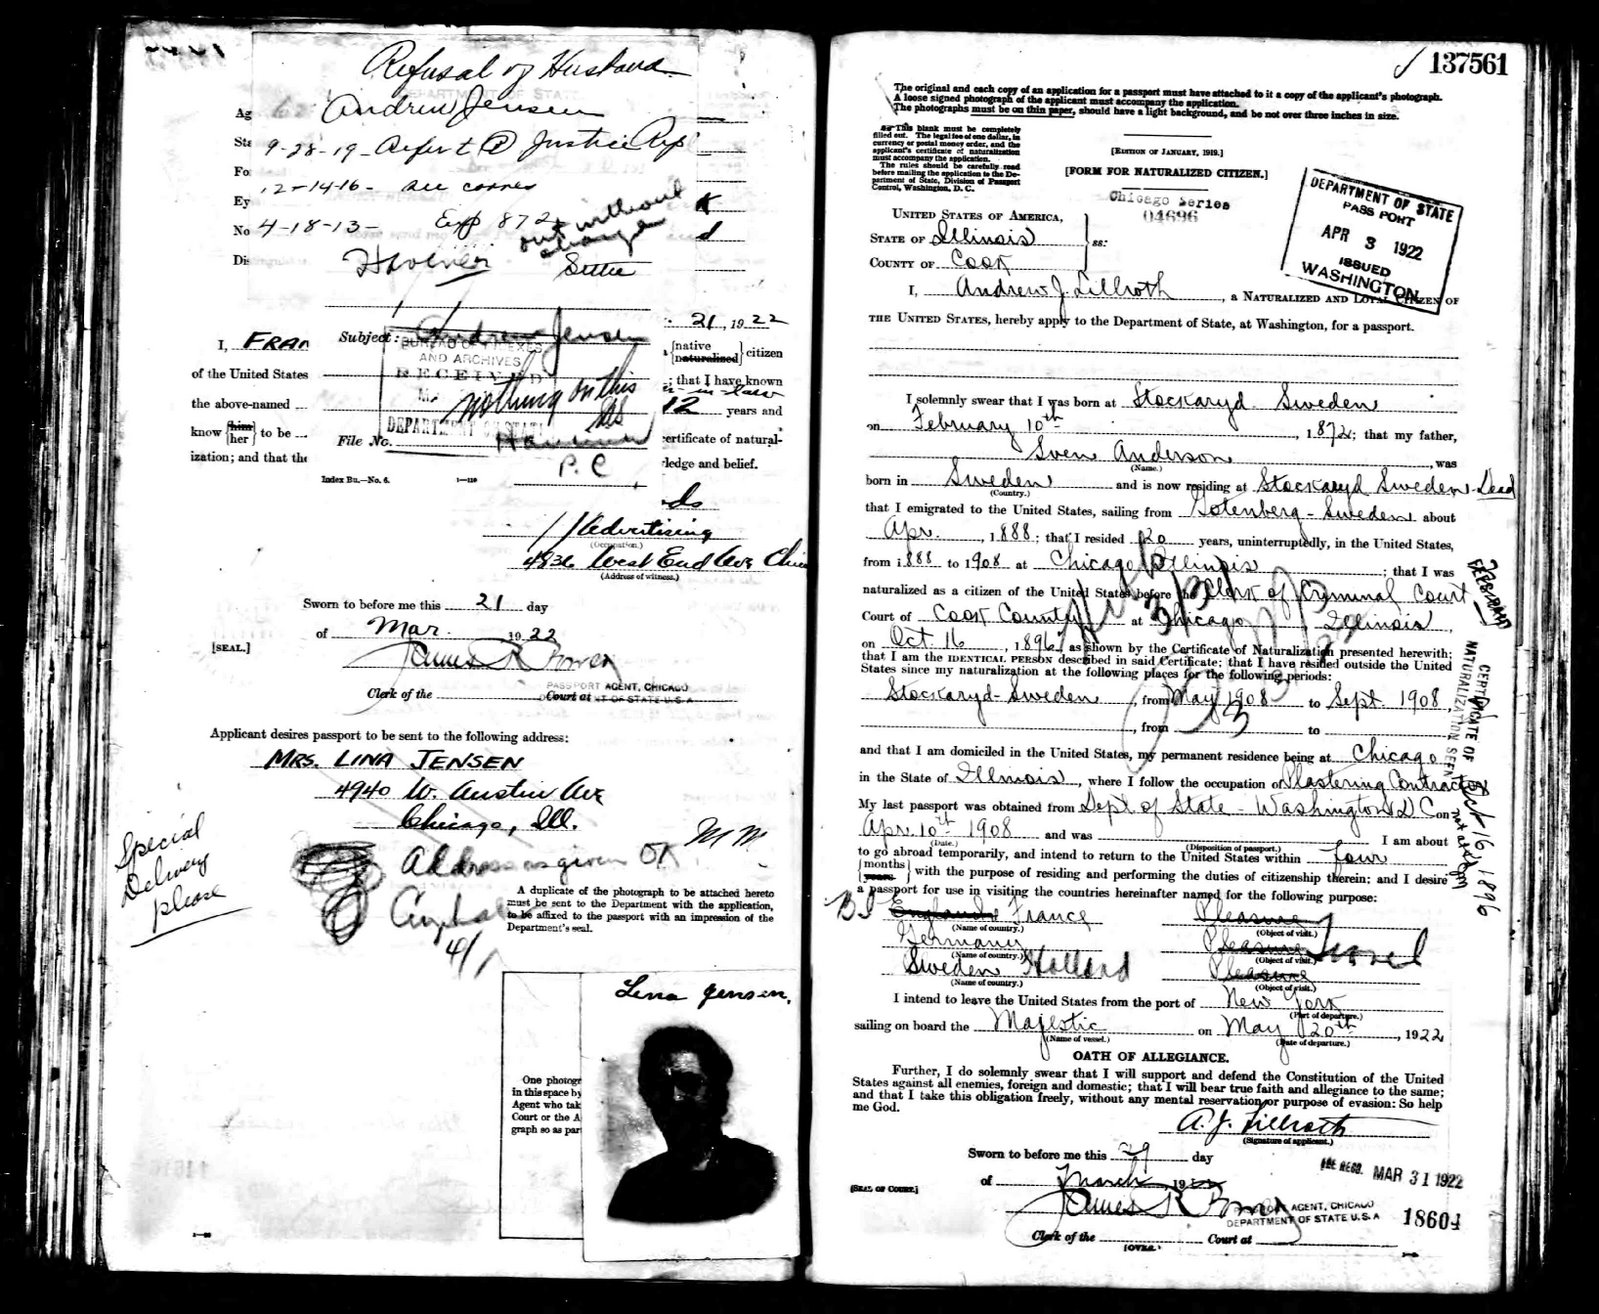 [Olsen-Lena_1922_passport_03_pic.jpg]